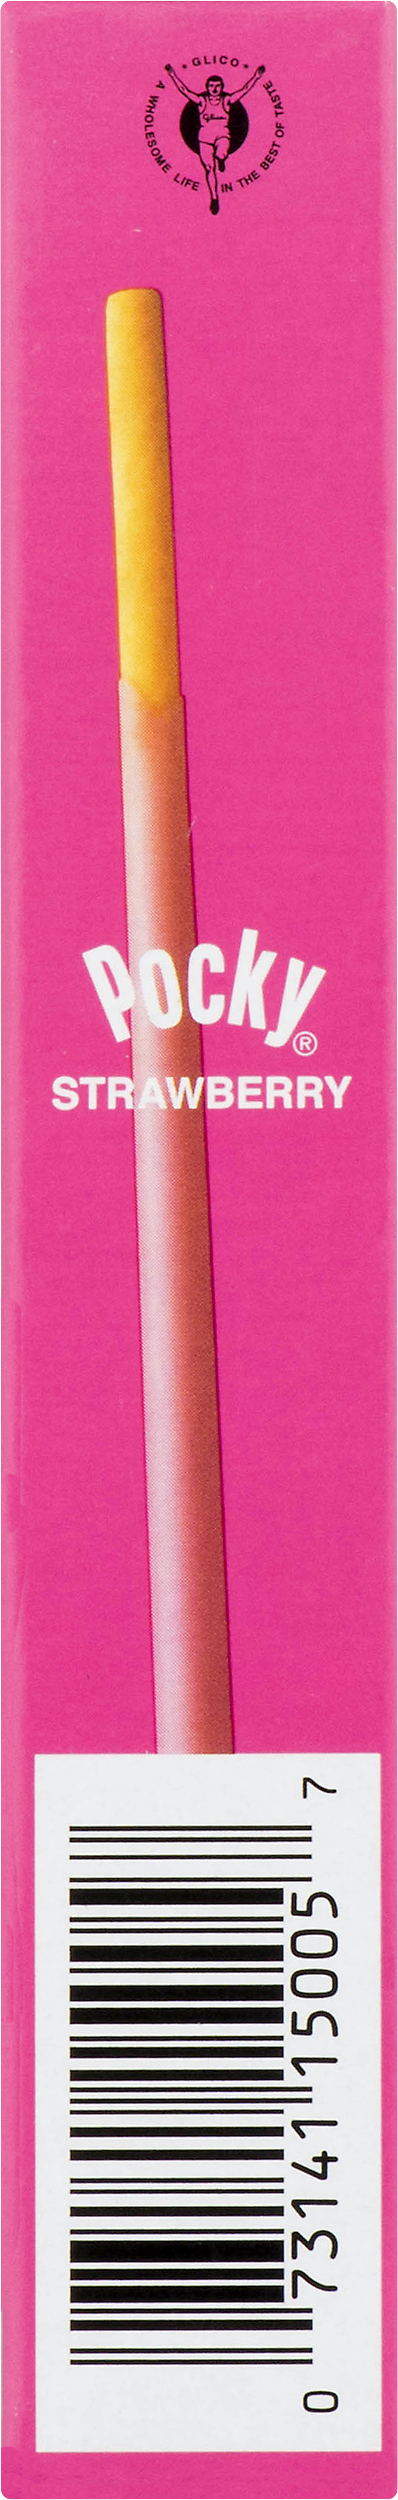 Glico Pocky Biscuit Sticks, Strawberry, 1.41 Oz